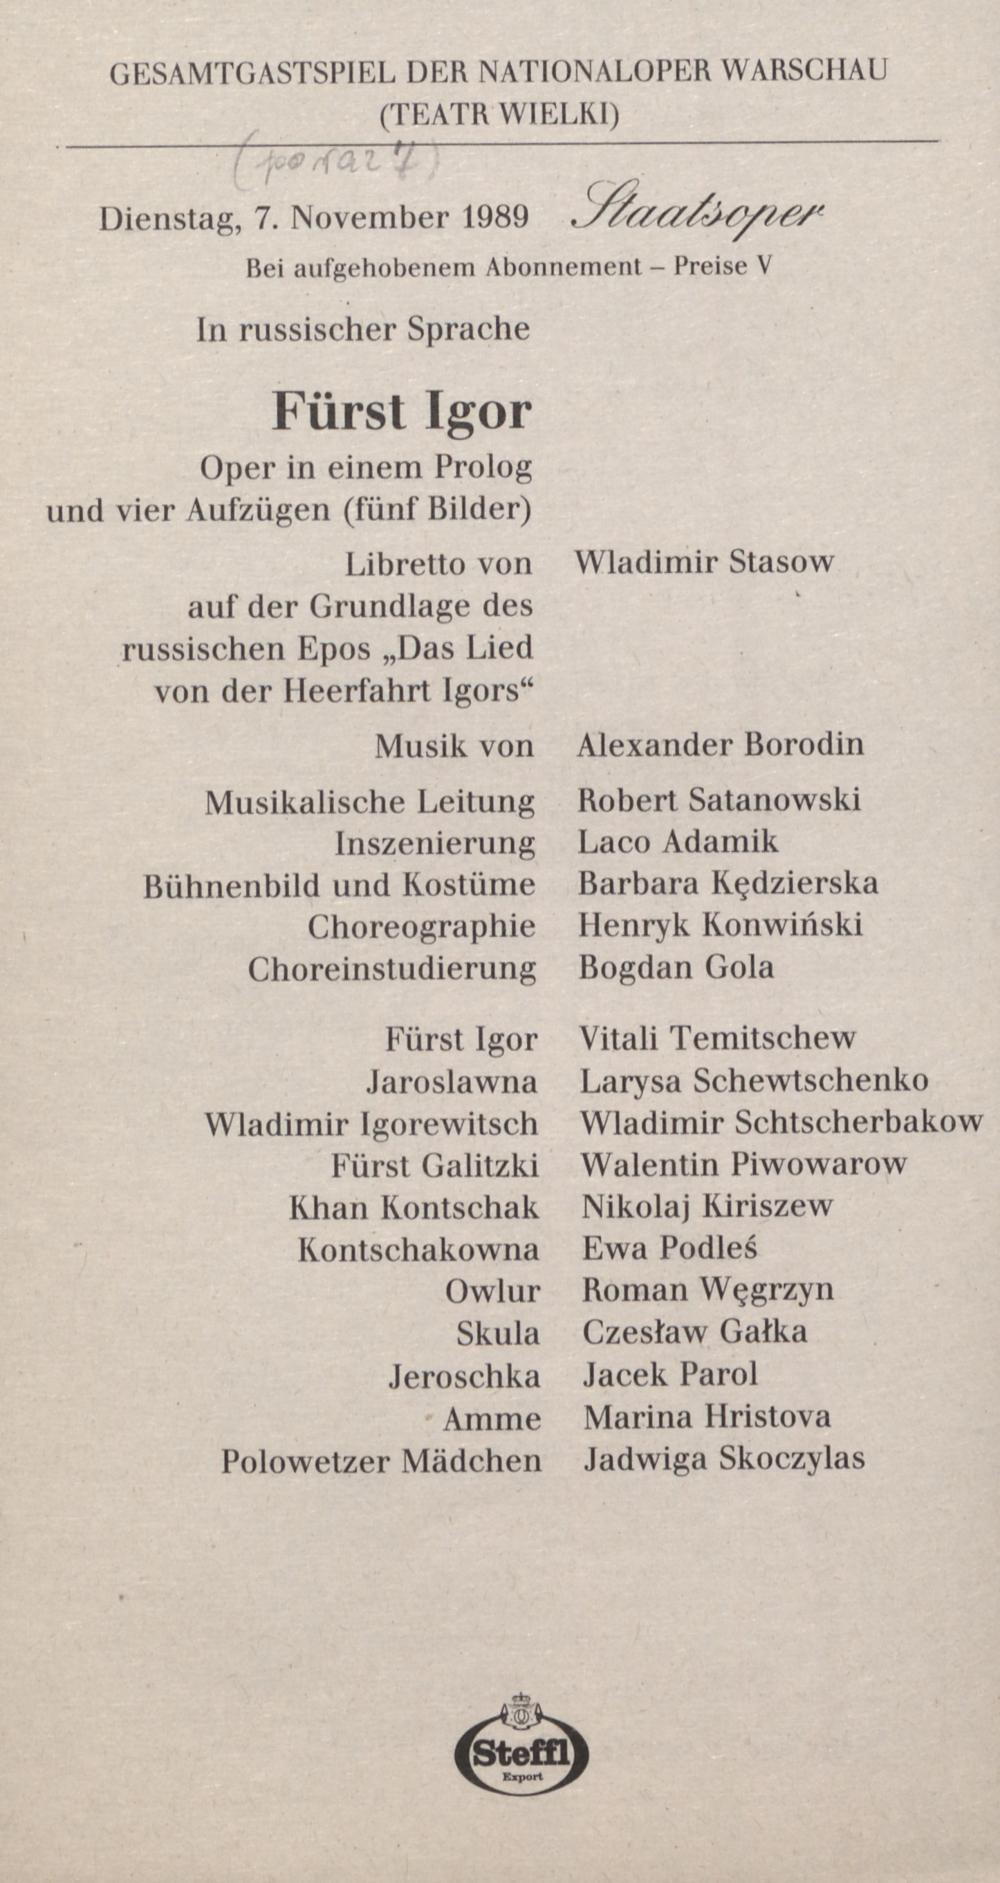 Gesamtgastspiel der Nationaloper Warschau (Teatr Wielki), „Fürst Igor” Alexander Borodin 07-11-1989